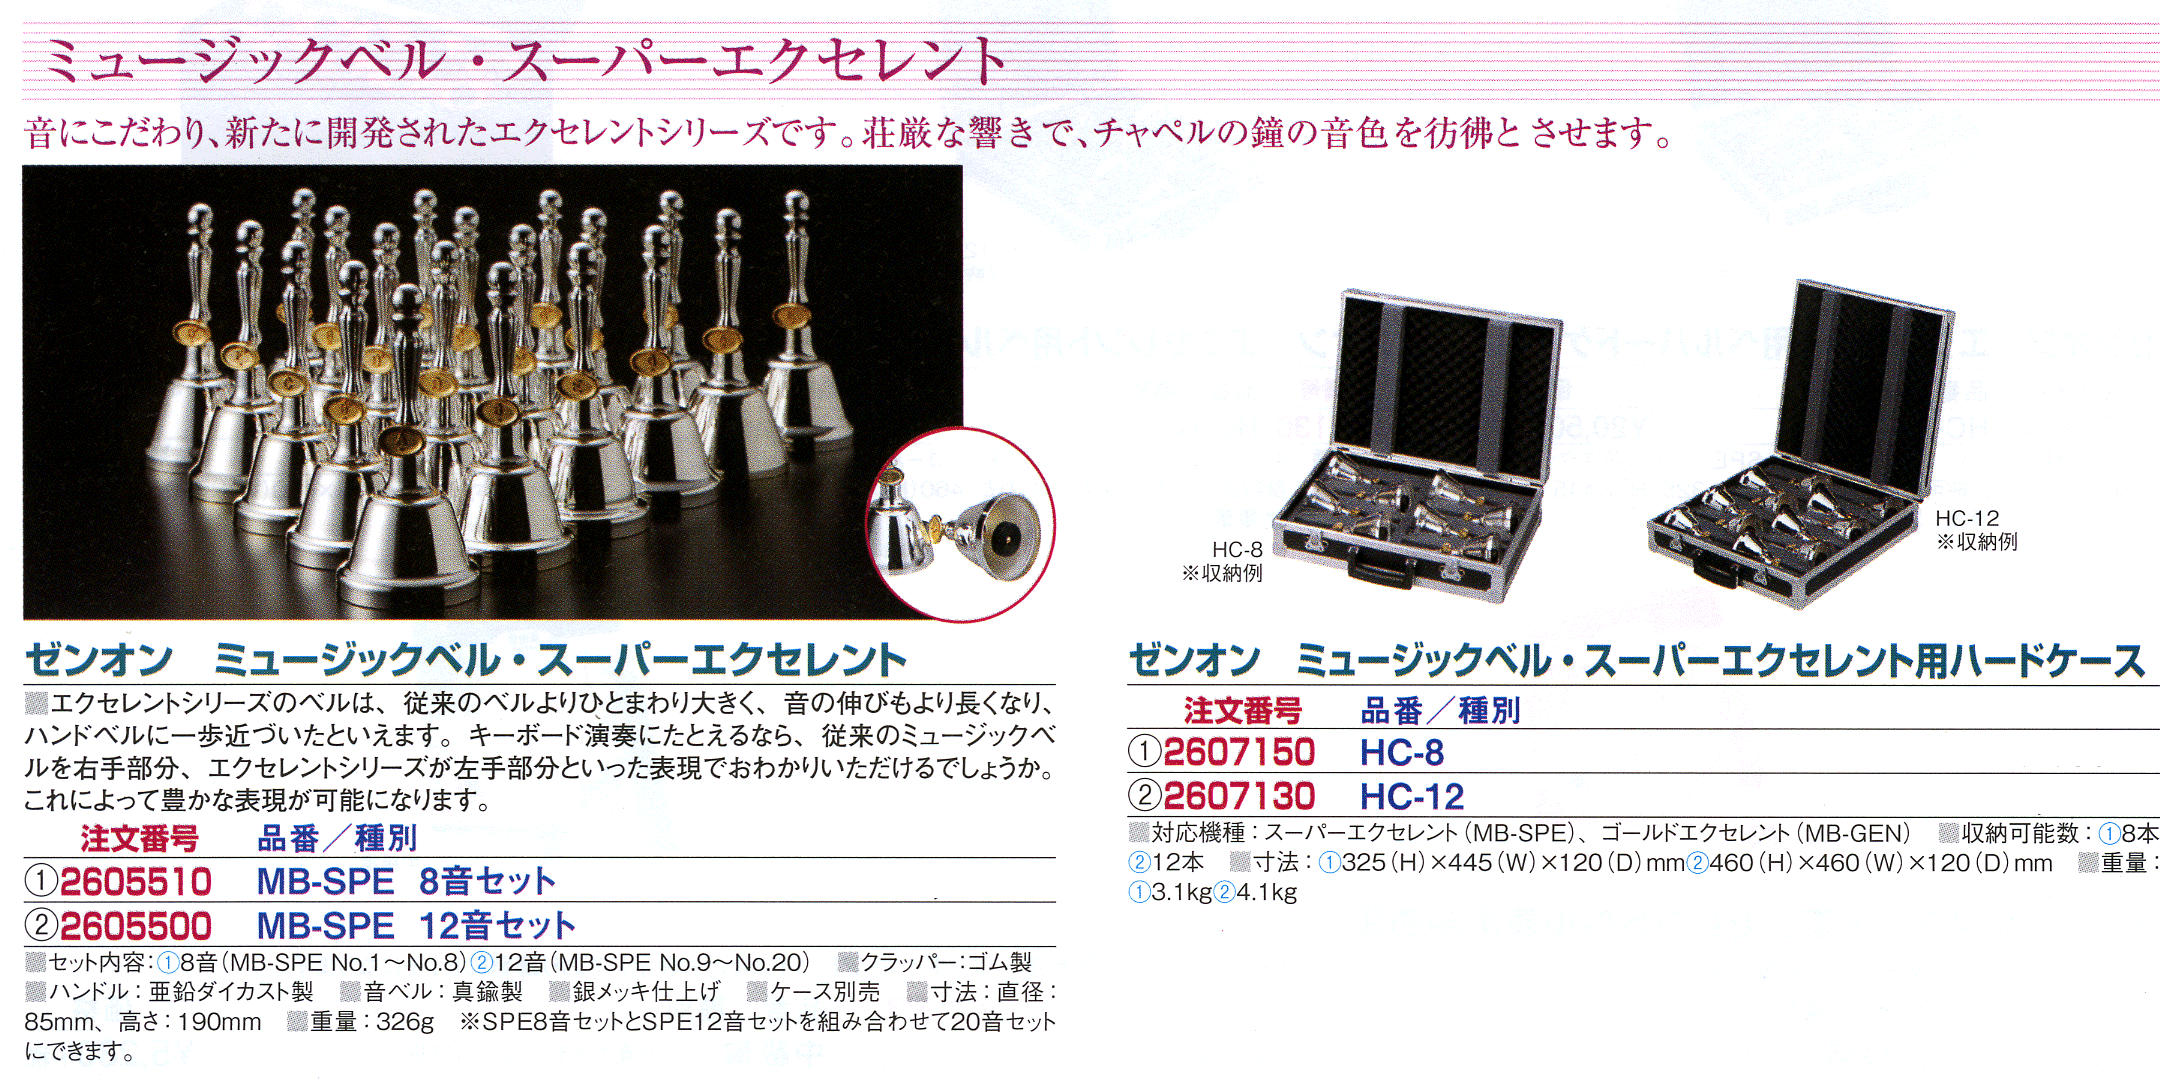 新品入荷 ゼンオン ミュージックベル スーパー用ハードケース HC-27